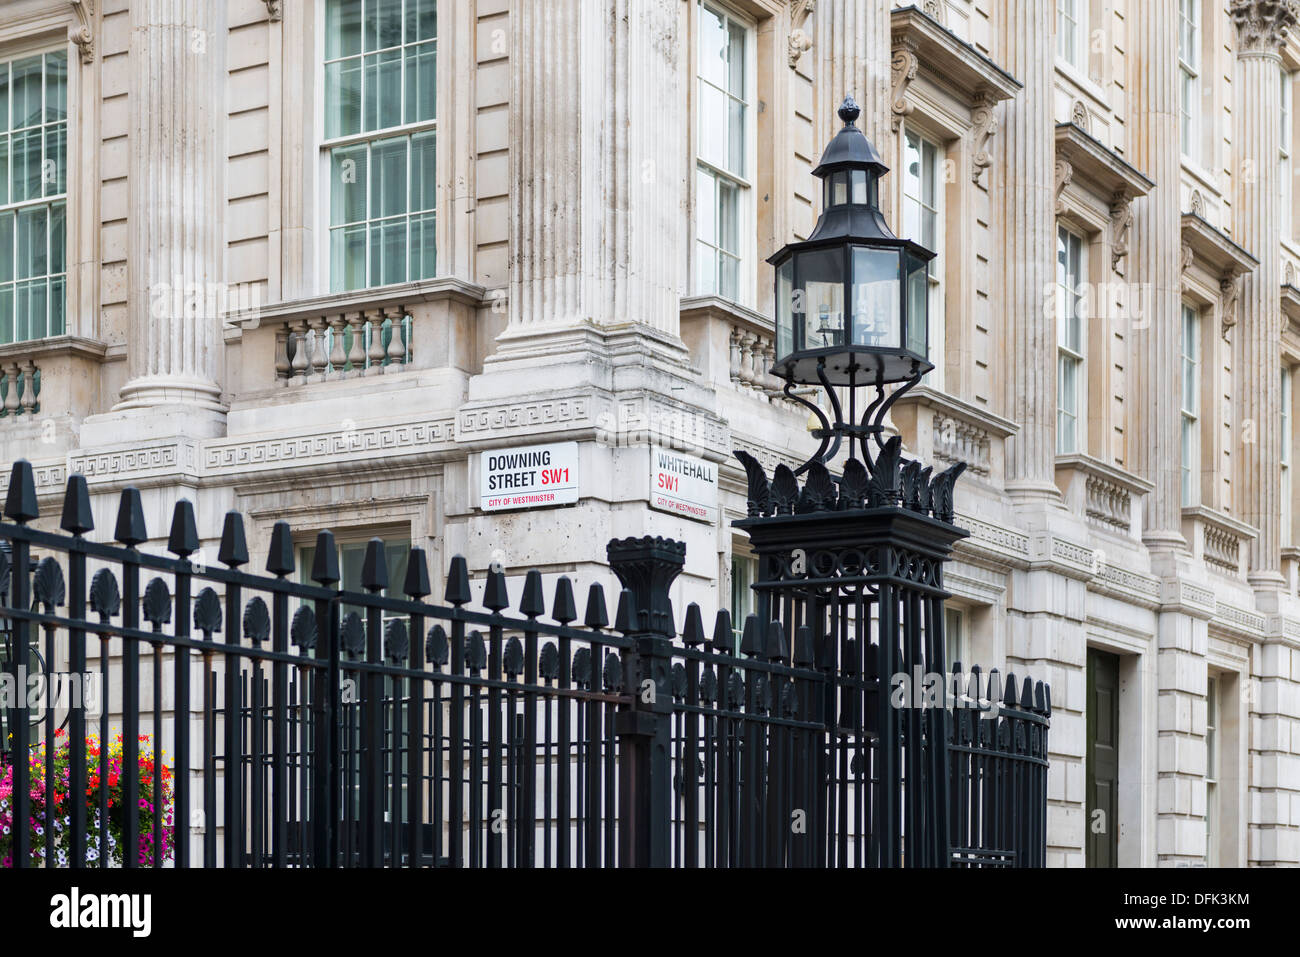 Ritagliato shot di cancelli con le indicazioni stradali per Downing Street e Whitehall Foto Stock